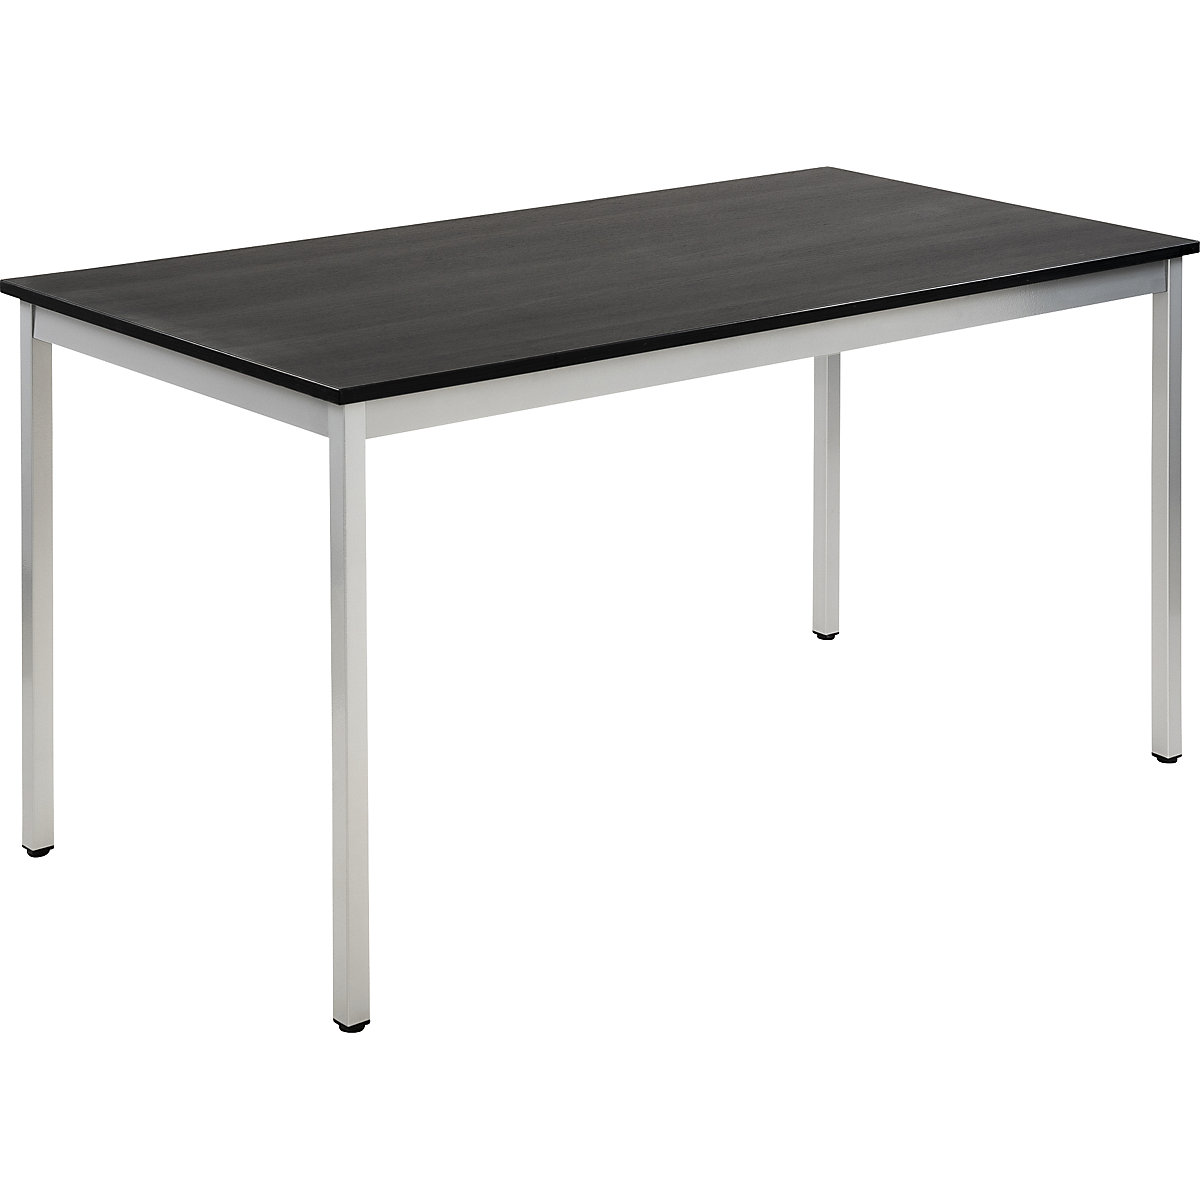 Víceúčelový stůl – eurokraft basic, obdélníkový tvar, š x v 1400 x 740 mm, hloubka 700 mm, deska v jasanovém dekoru tmavá šedá, podstavec v barvě bílý hliník-17